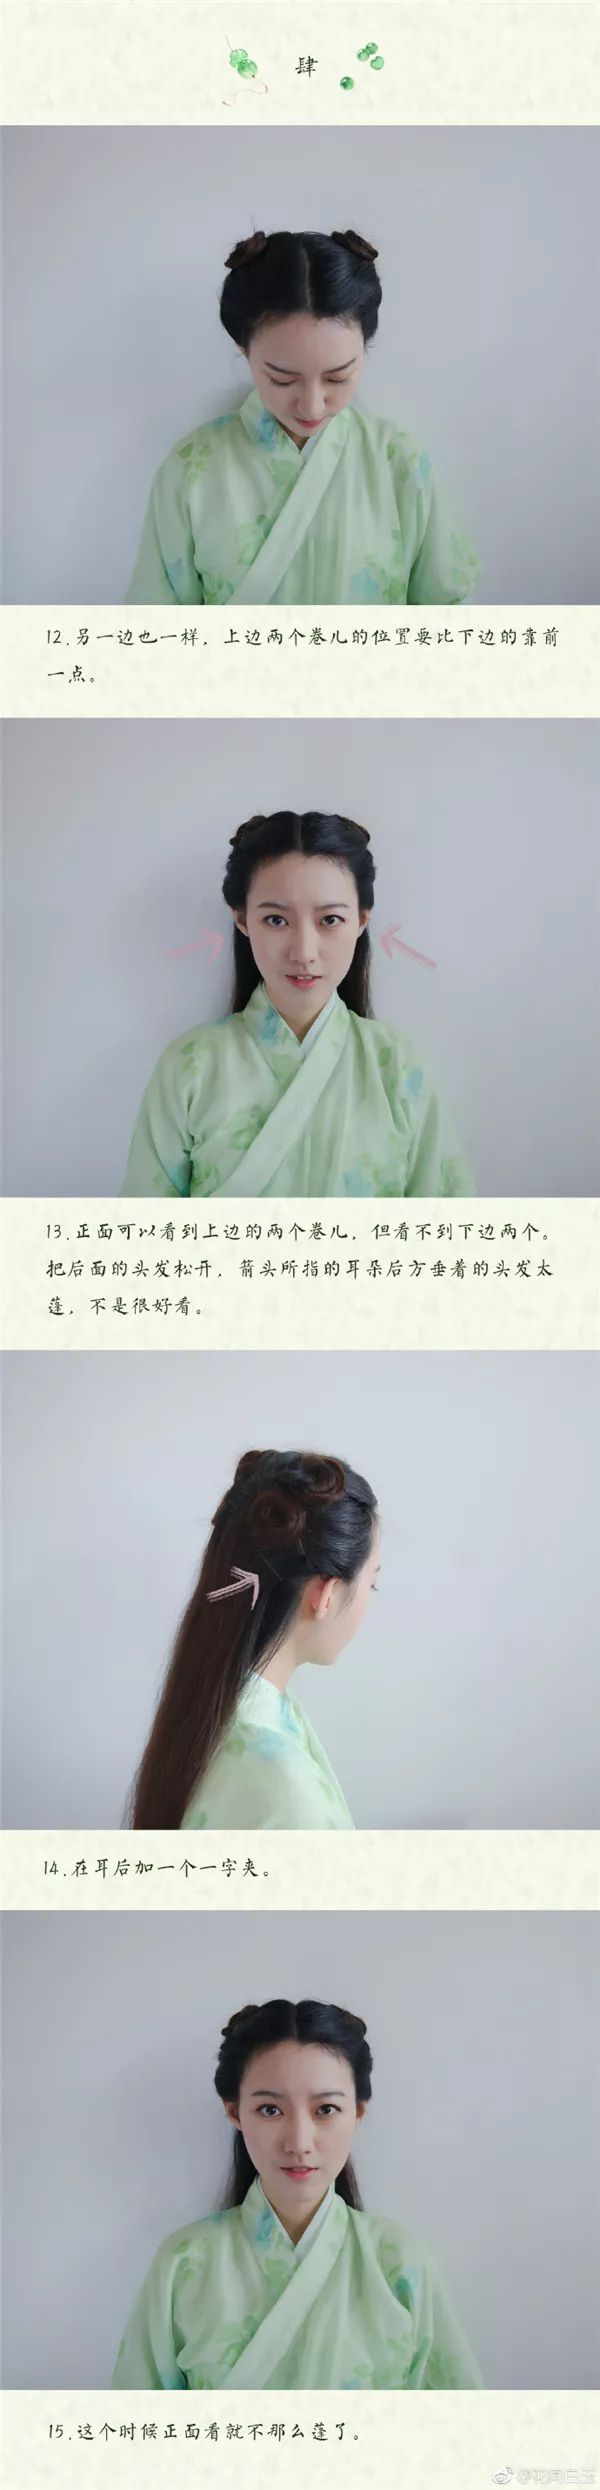 仙仙哒古装发型步骤教程